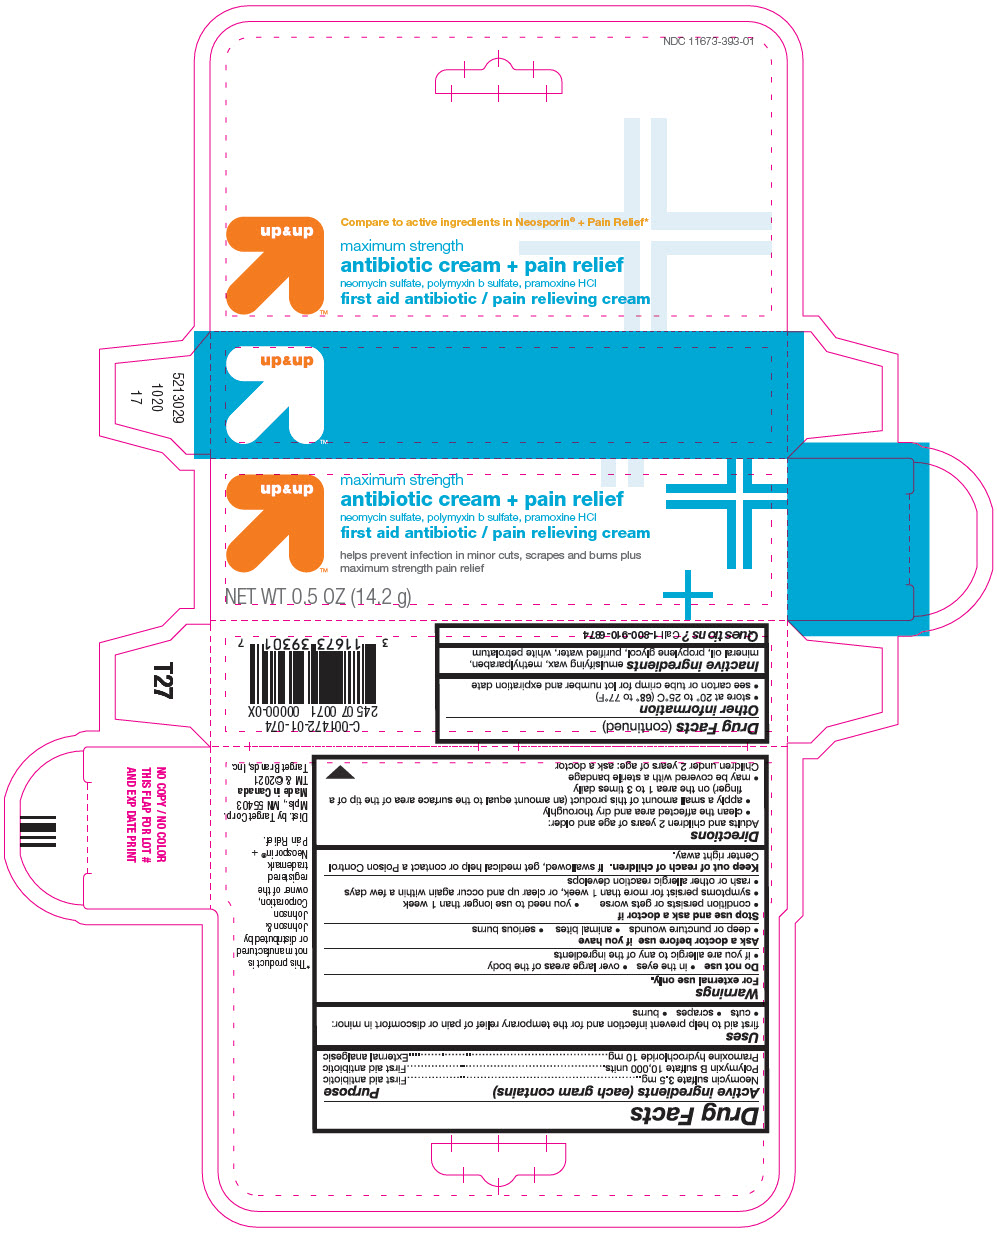 PRINCIPAL DISPLAY PANEL - 14.2 g Tube Carton